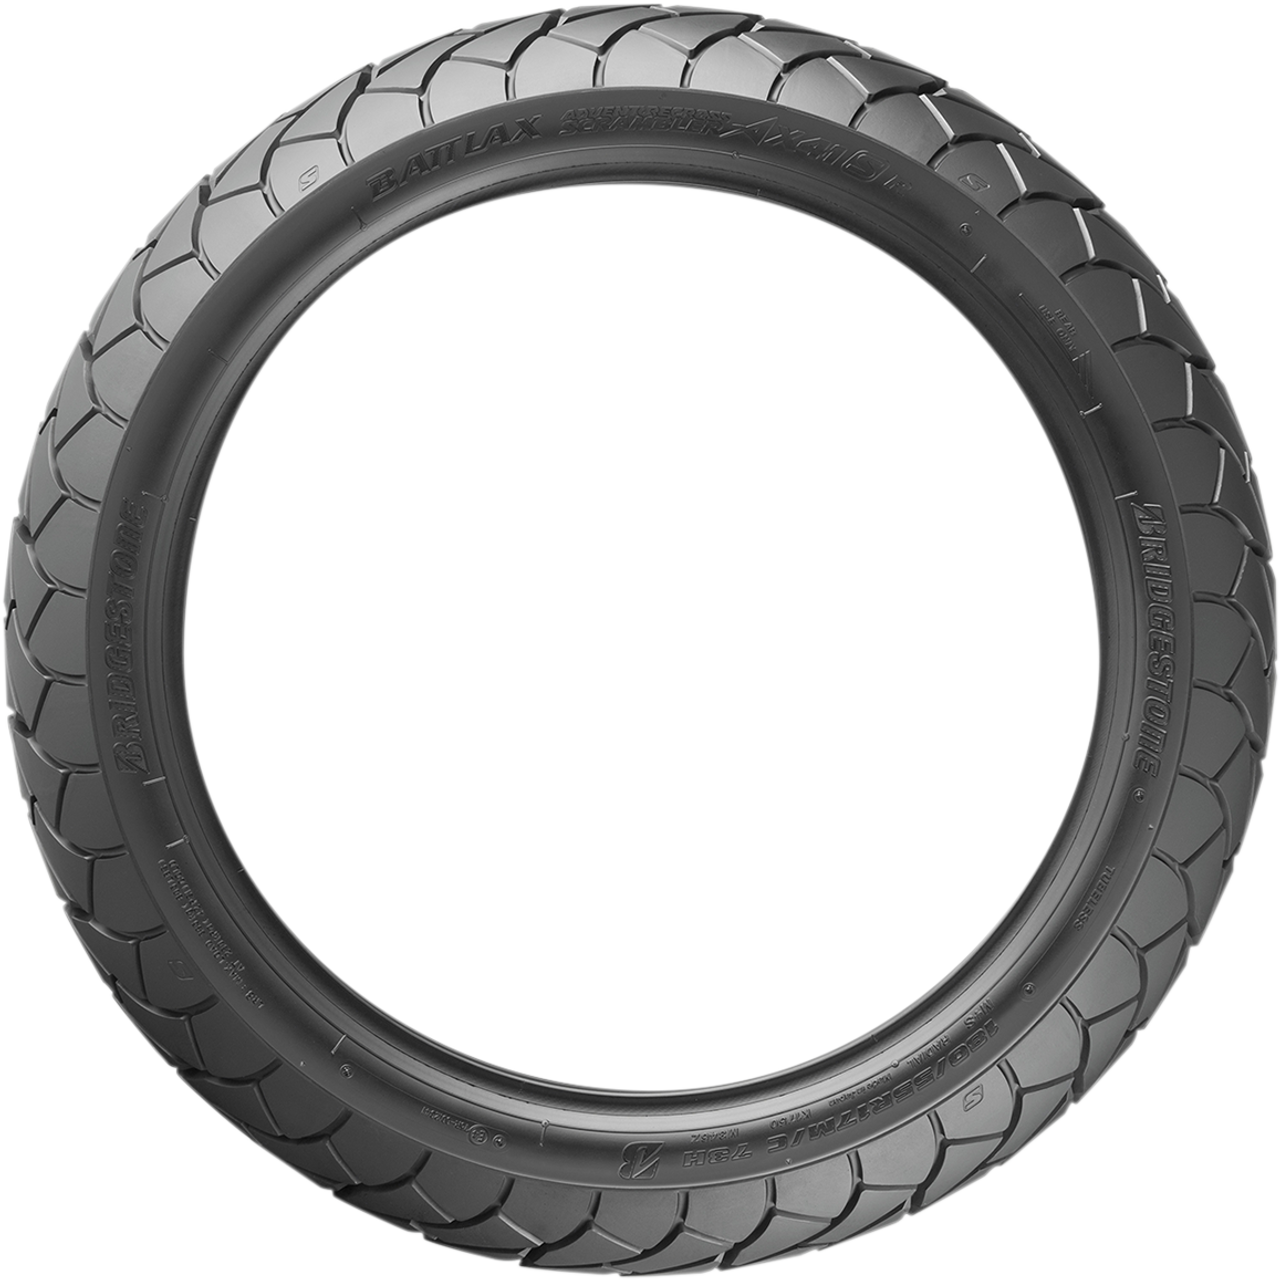 Tire - Battlax Adventurecross AX41S - 130/80R17 - 65H